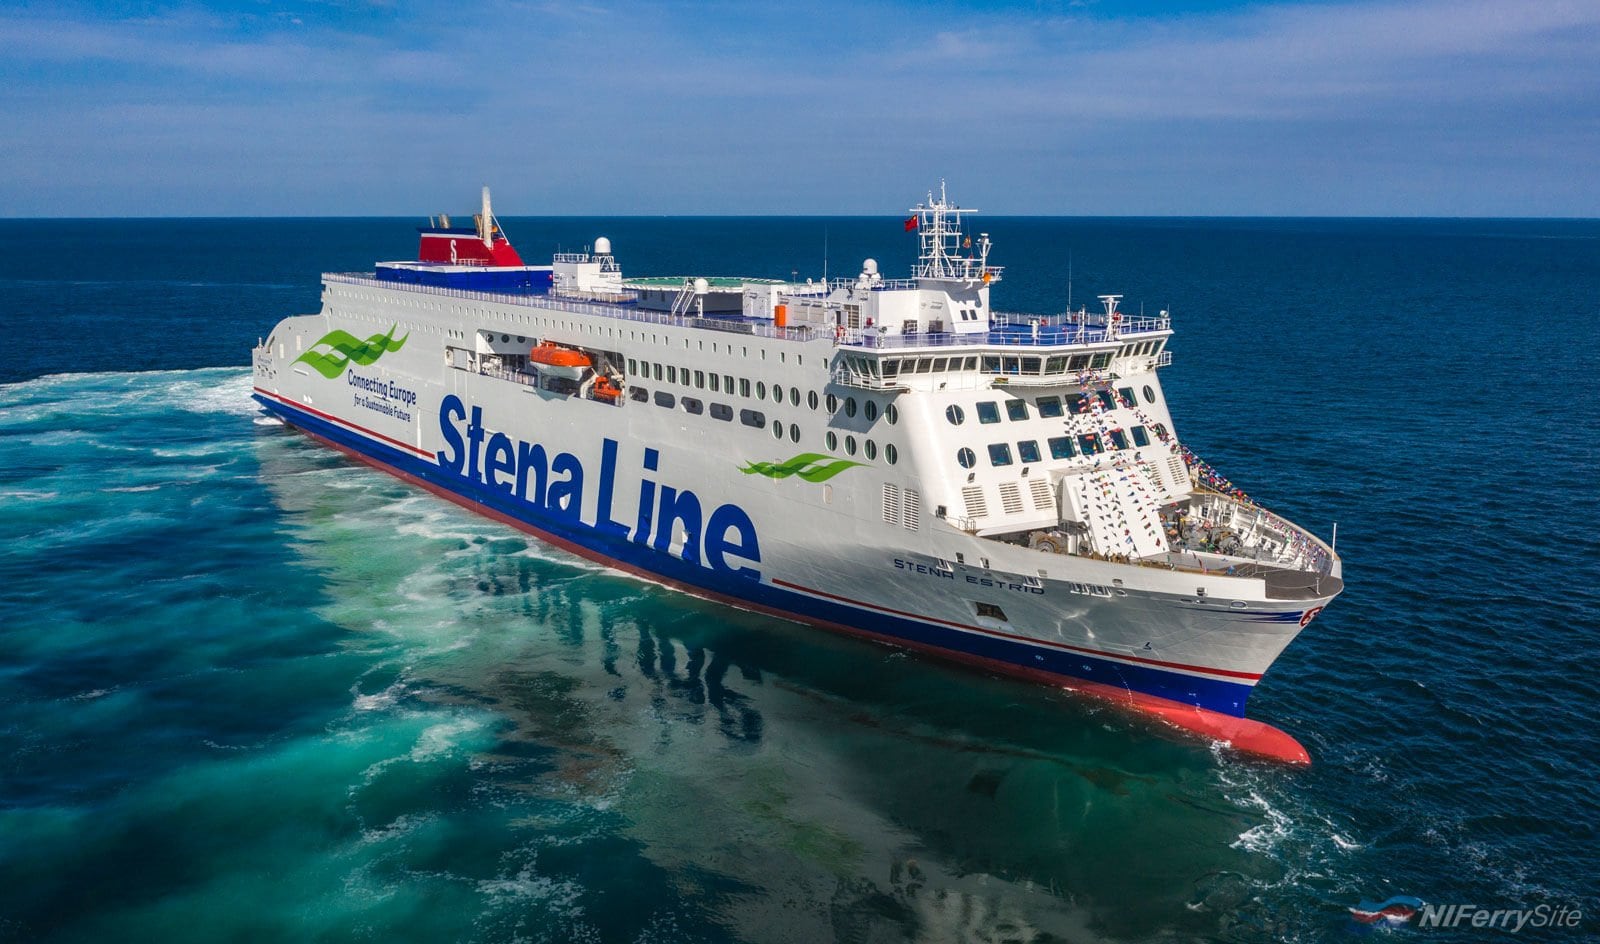 STENA ESTRID on sea trials in the Yellow Sea. Stena Line